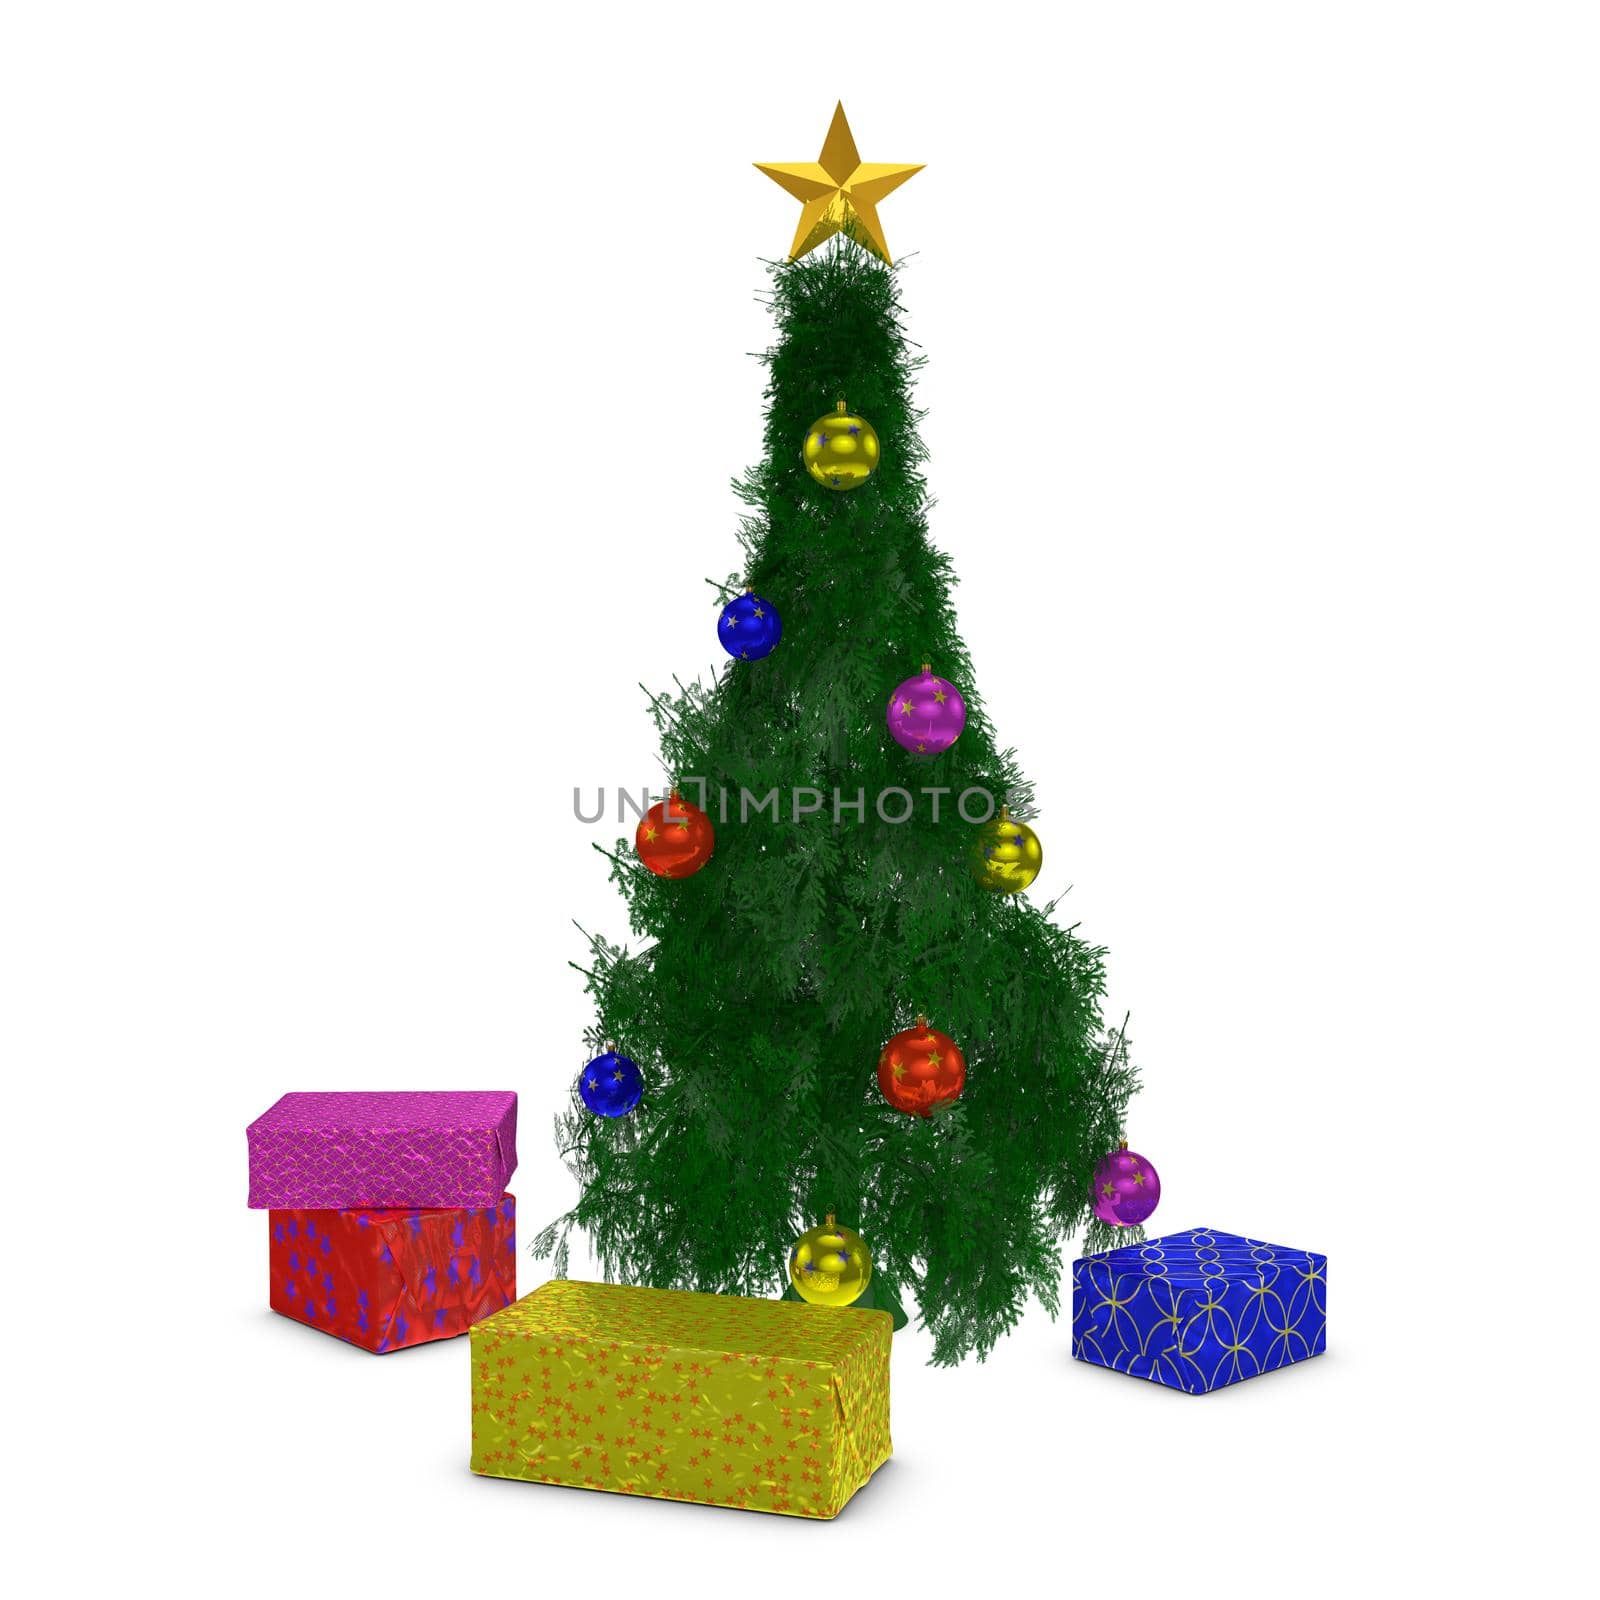 Christmas tree by rommma